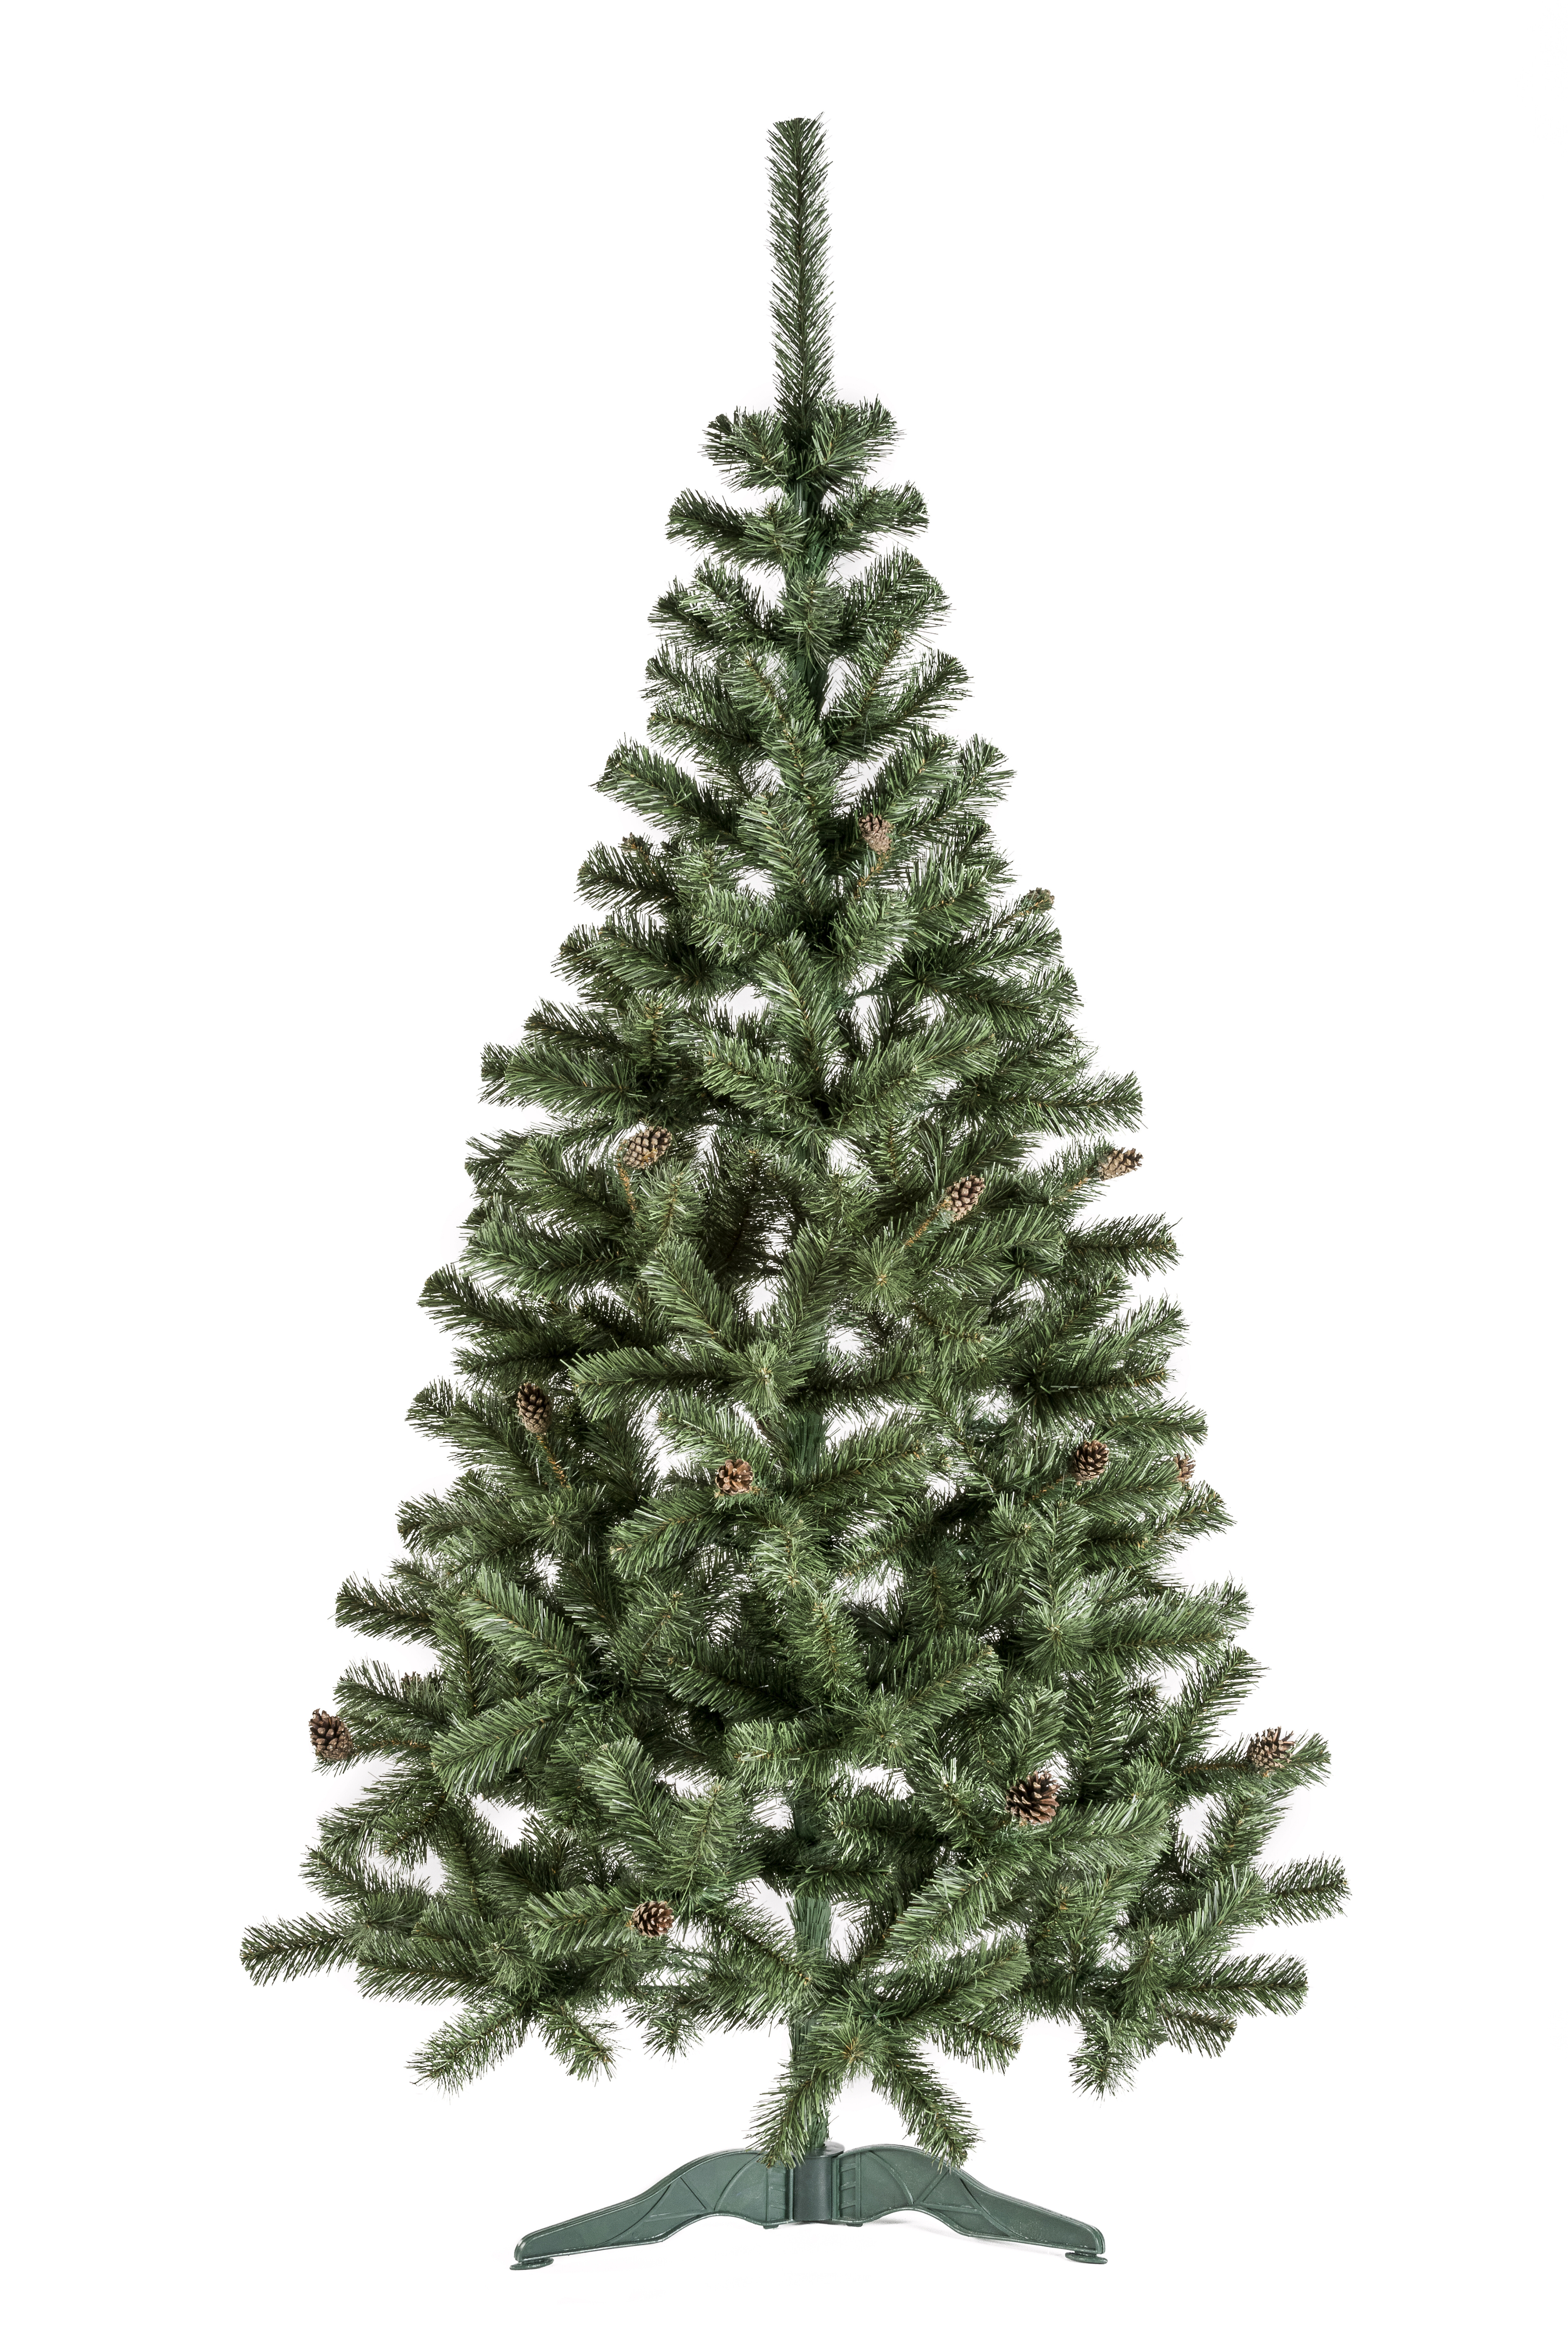 Aga Vianočný stromček 150 cm so šiškami